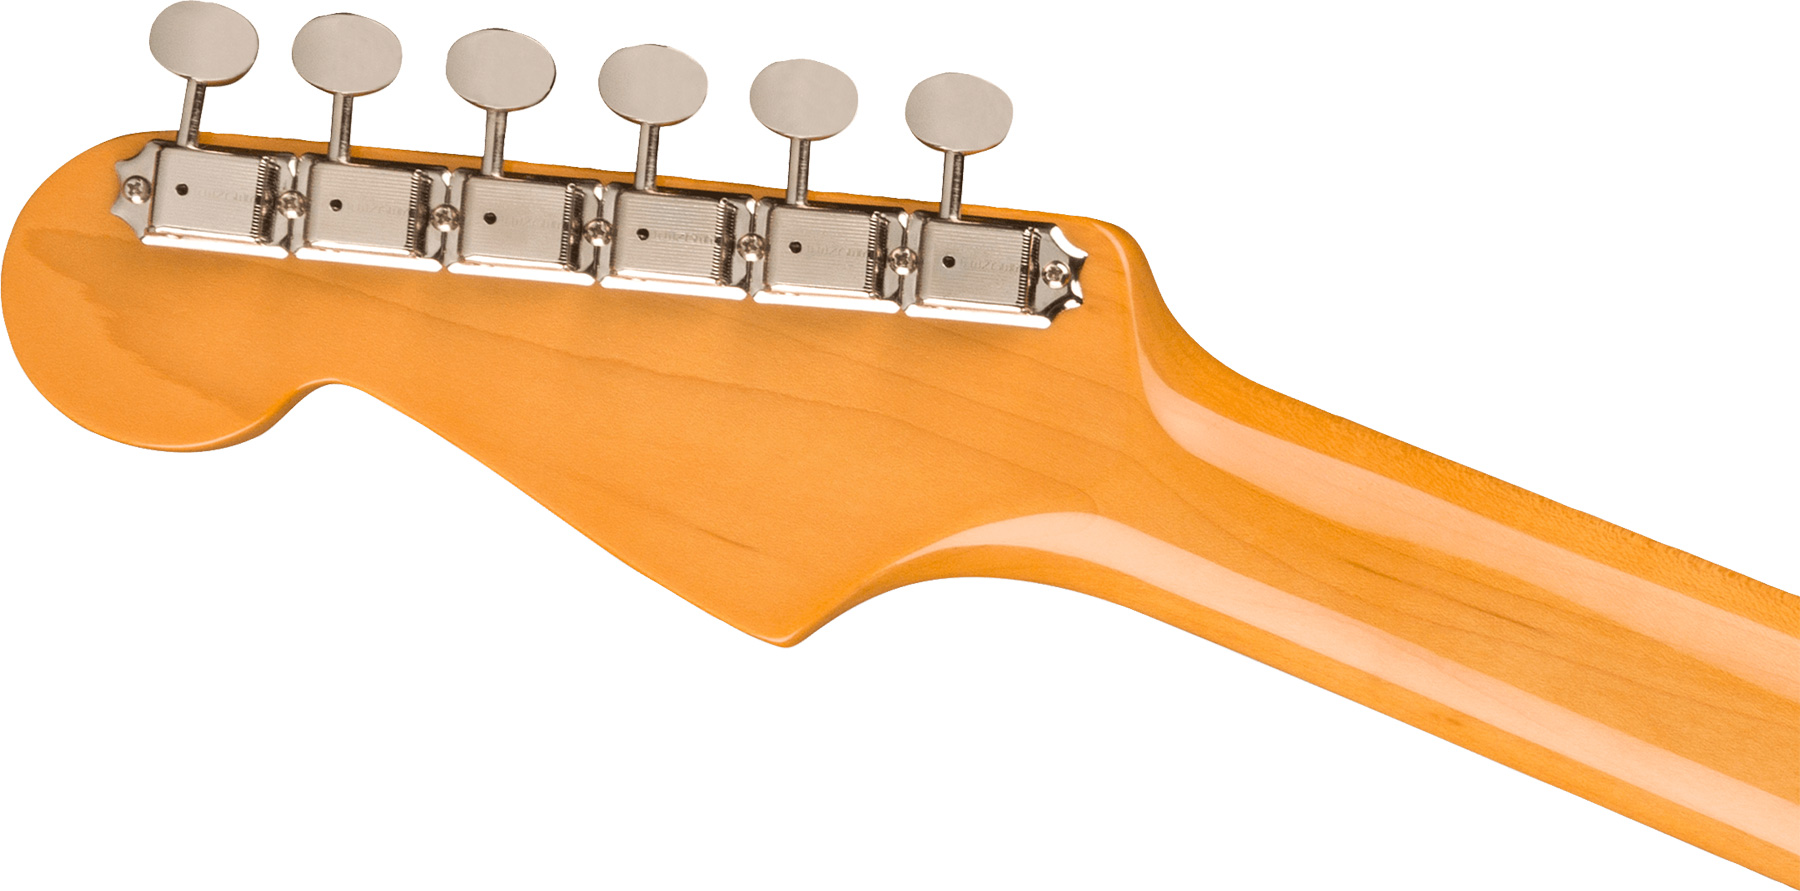 Fender Strat 1961 American Vintage Ii Usa 3s Trem Rw - 3-color Sunburst - Elektrische gitaar in Str-vorm - Variation 3